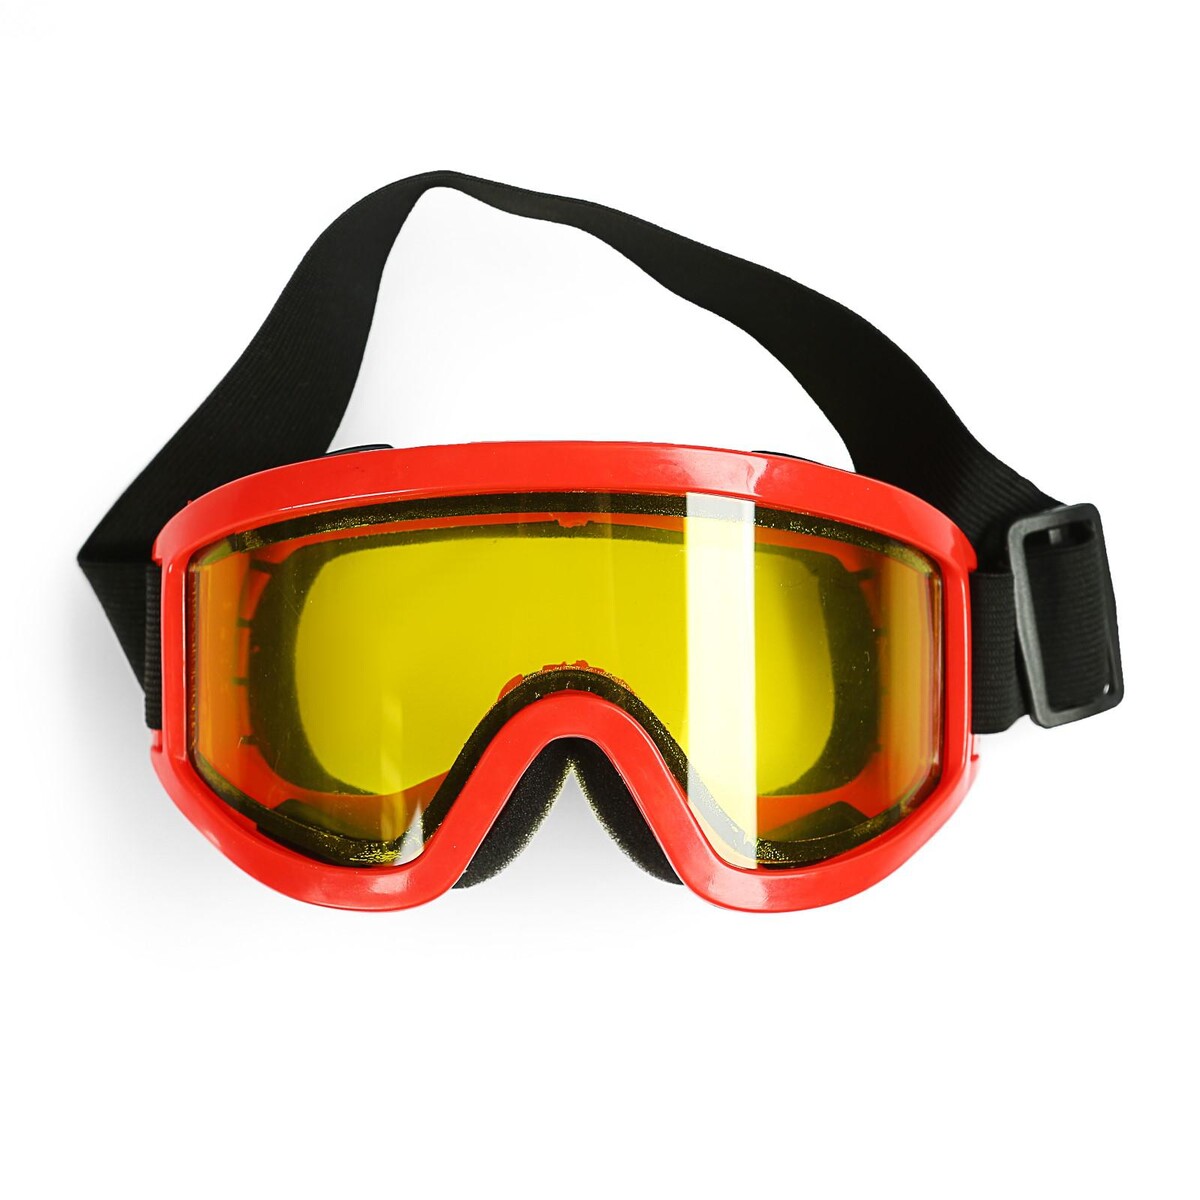 Очки-маска для езды на мототехнике, стекло двухслойное желтое, цвет красный маска для плавания salvas geo md mask ca140s1rysth красный